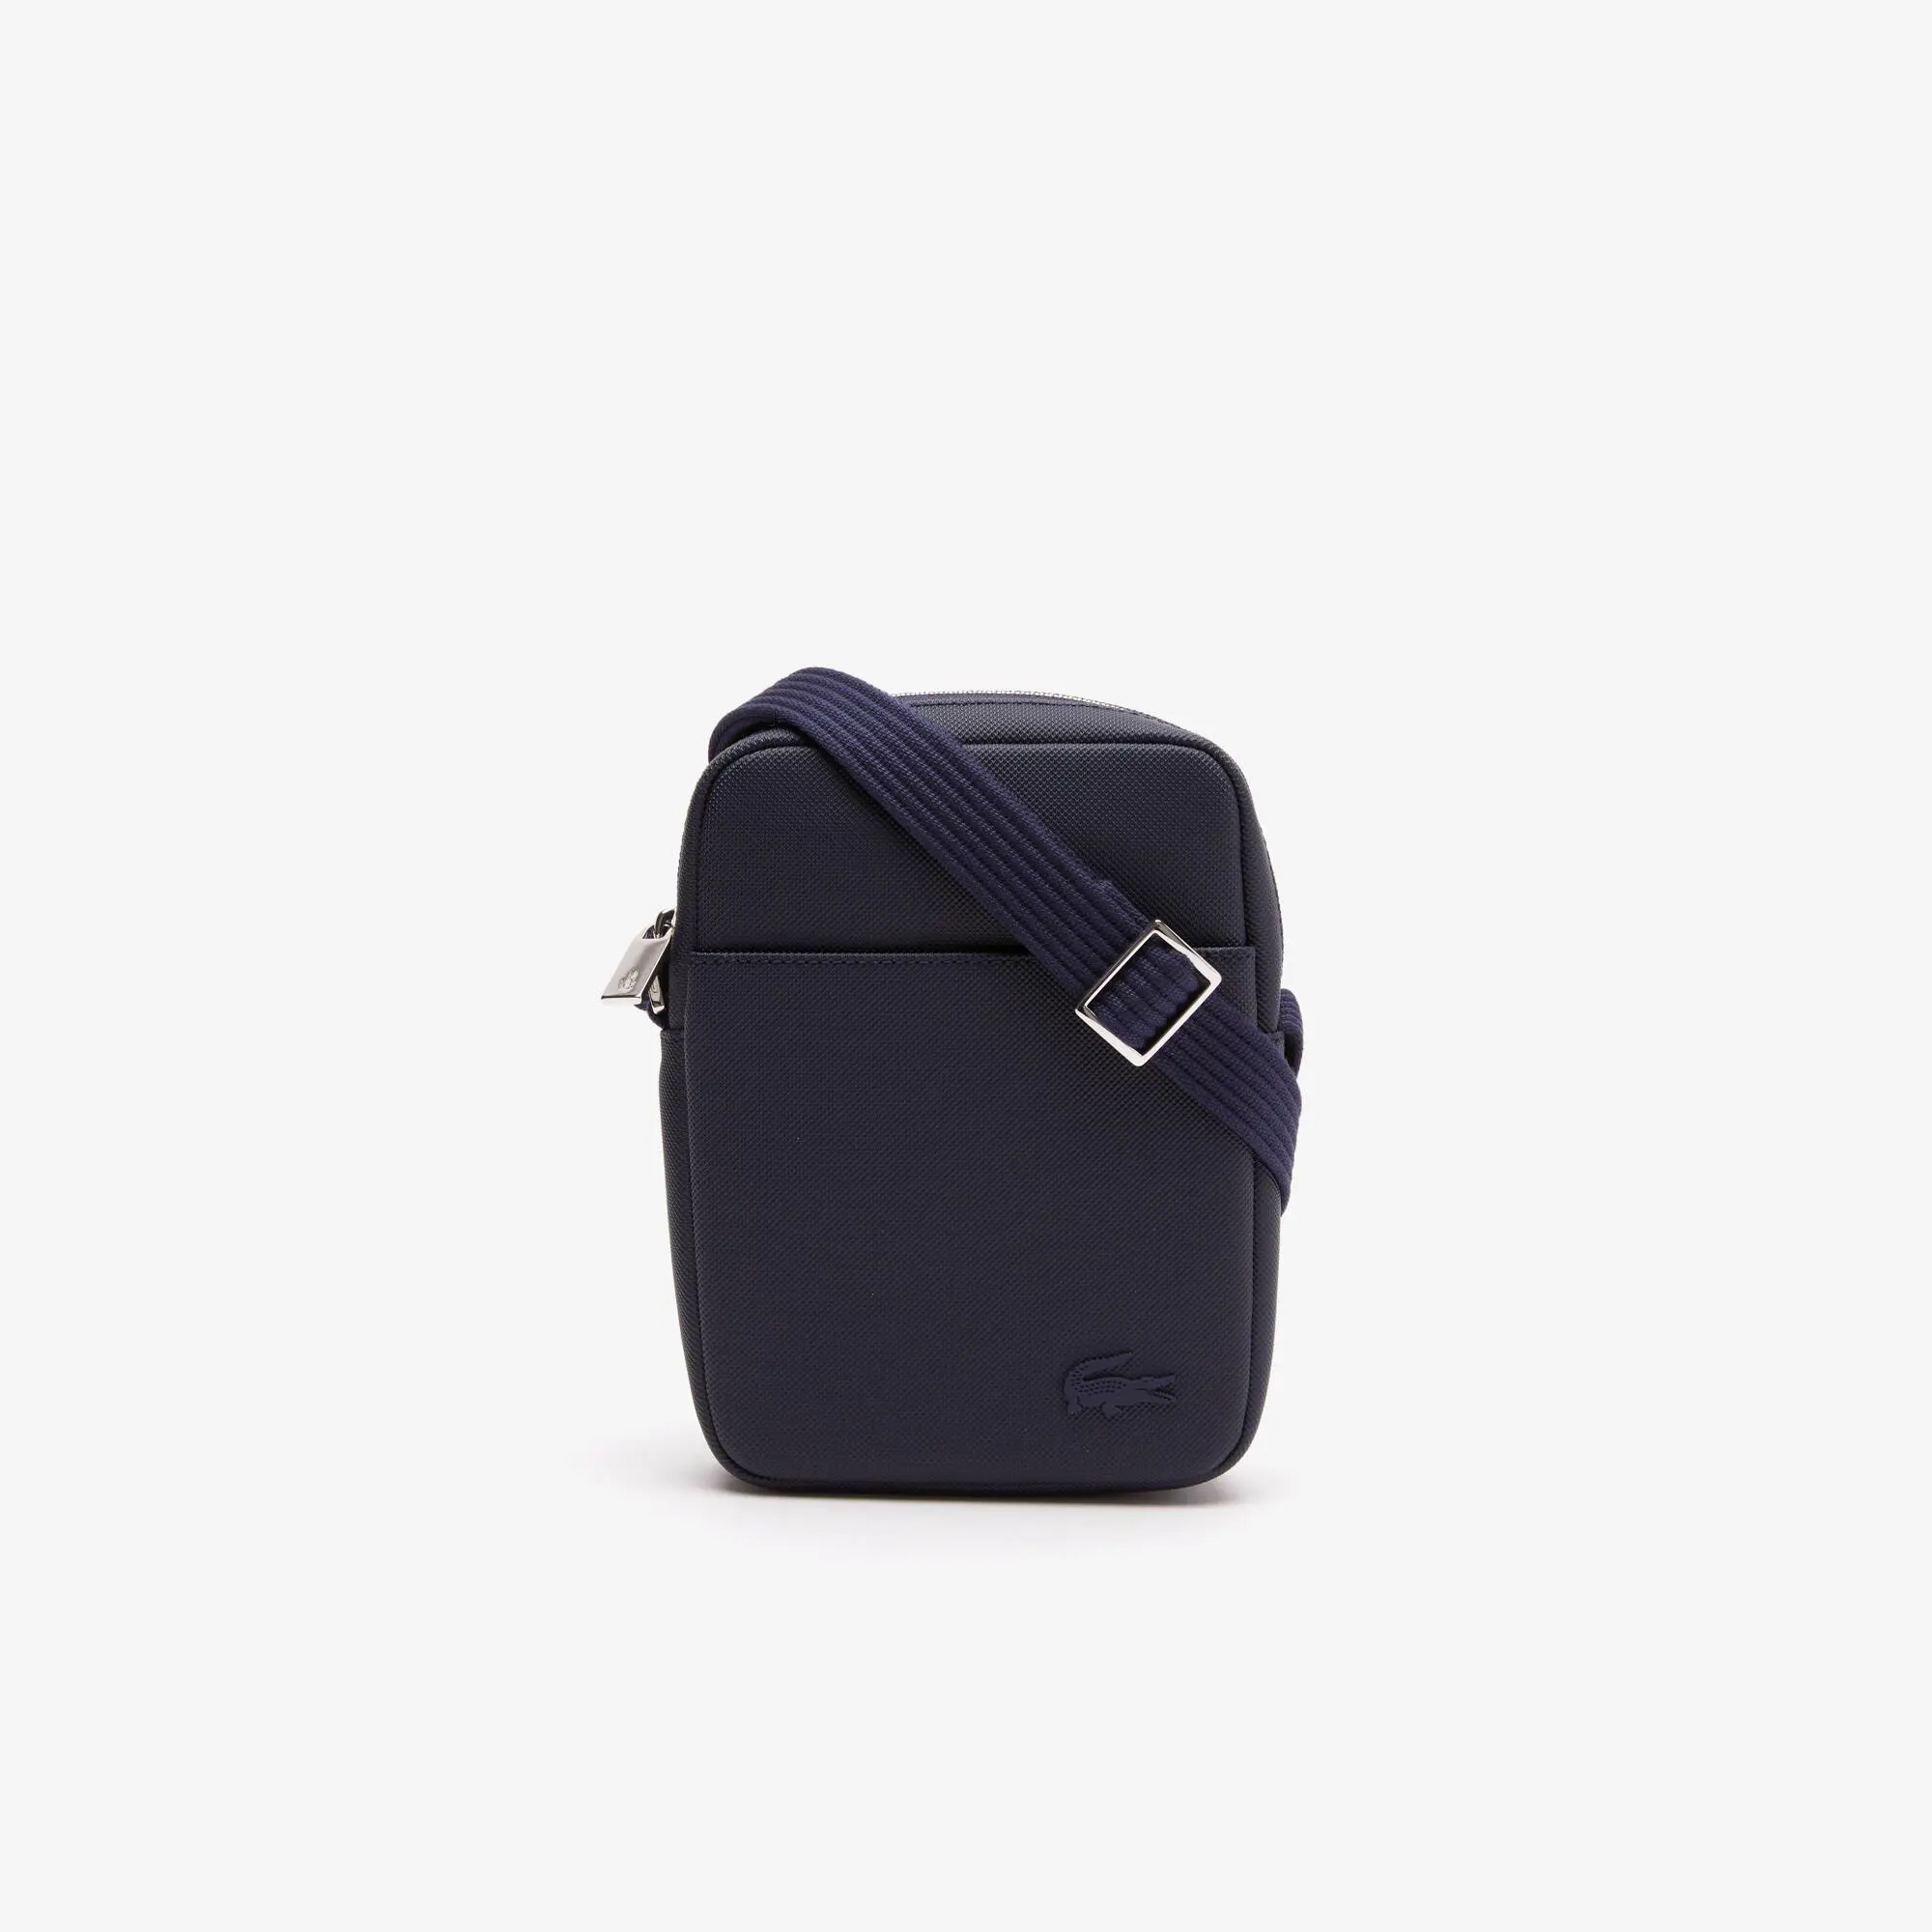 Lacoste Men's Classic Petit Piqué Vertical Zip Bag. 2